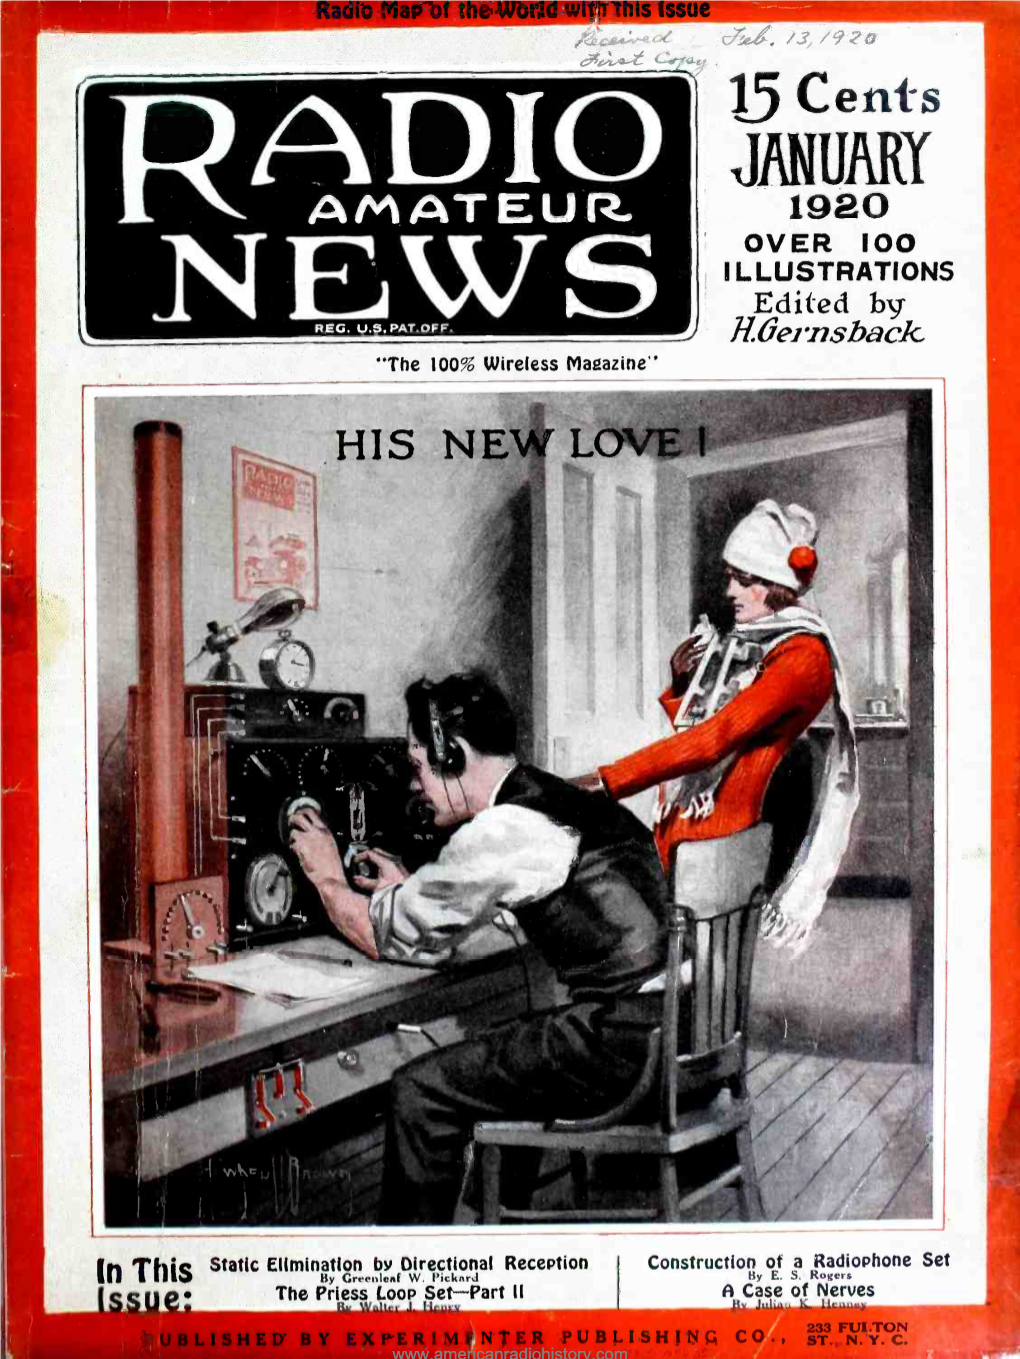 AMATEUR 1920 OVER 100 I L LUSTRATIONS Edited B' NEWSREG